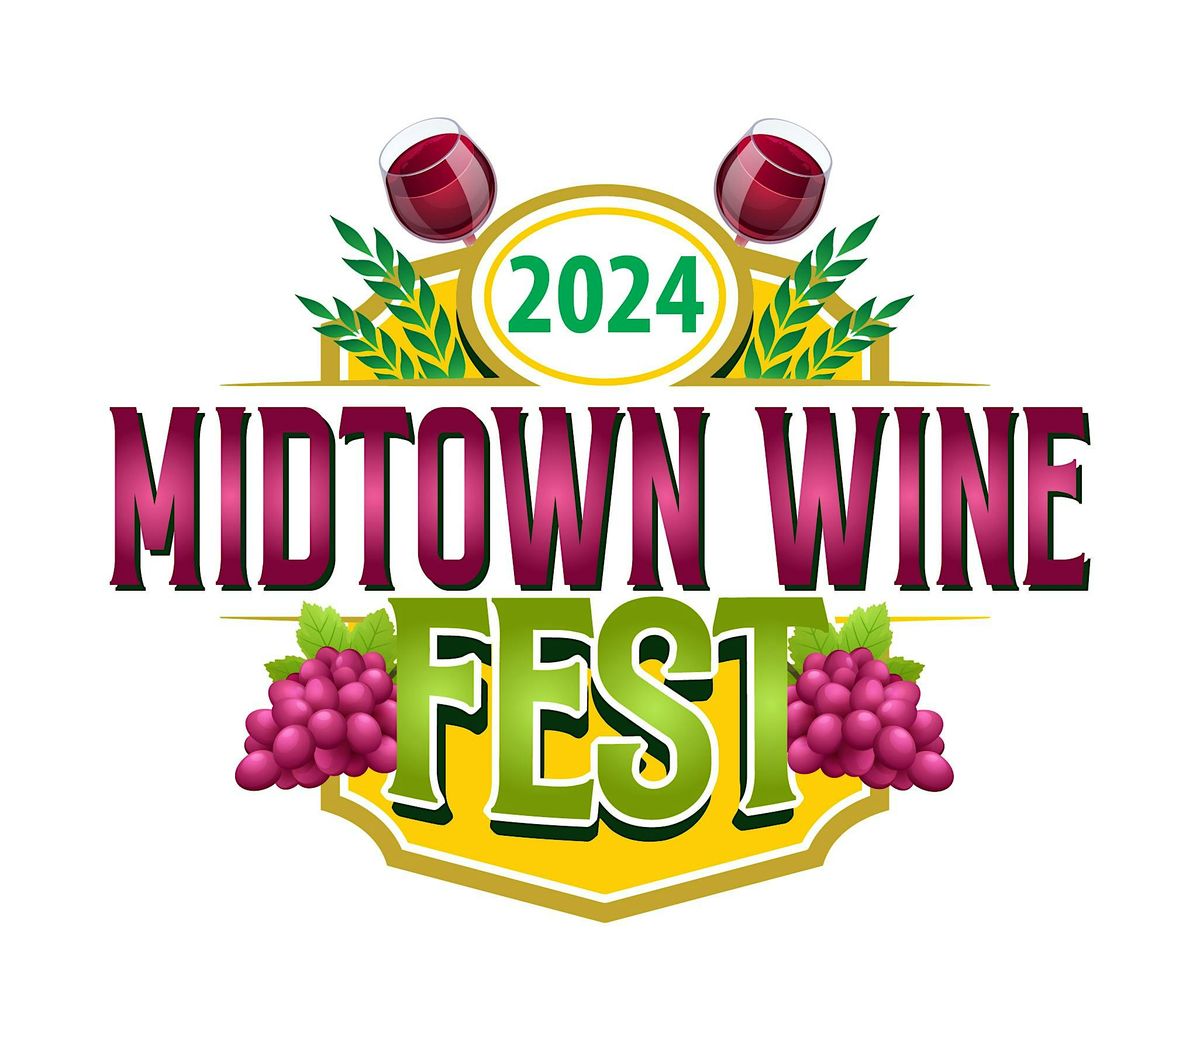 2024 Midtown Wine Fest